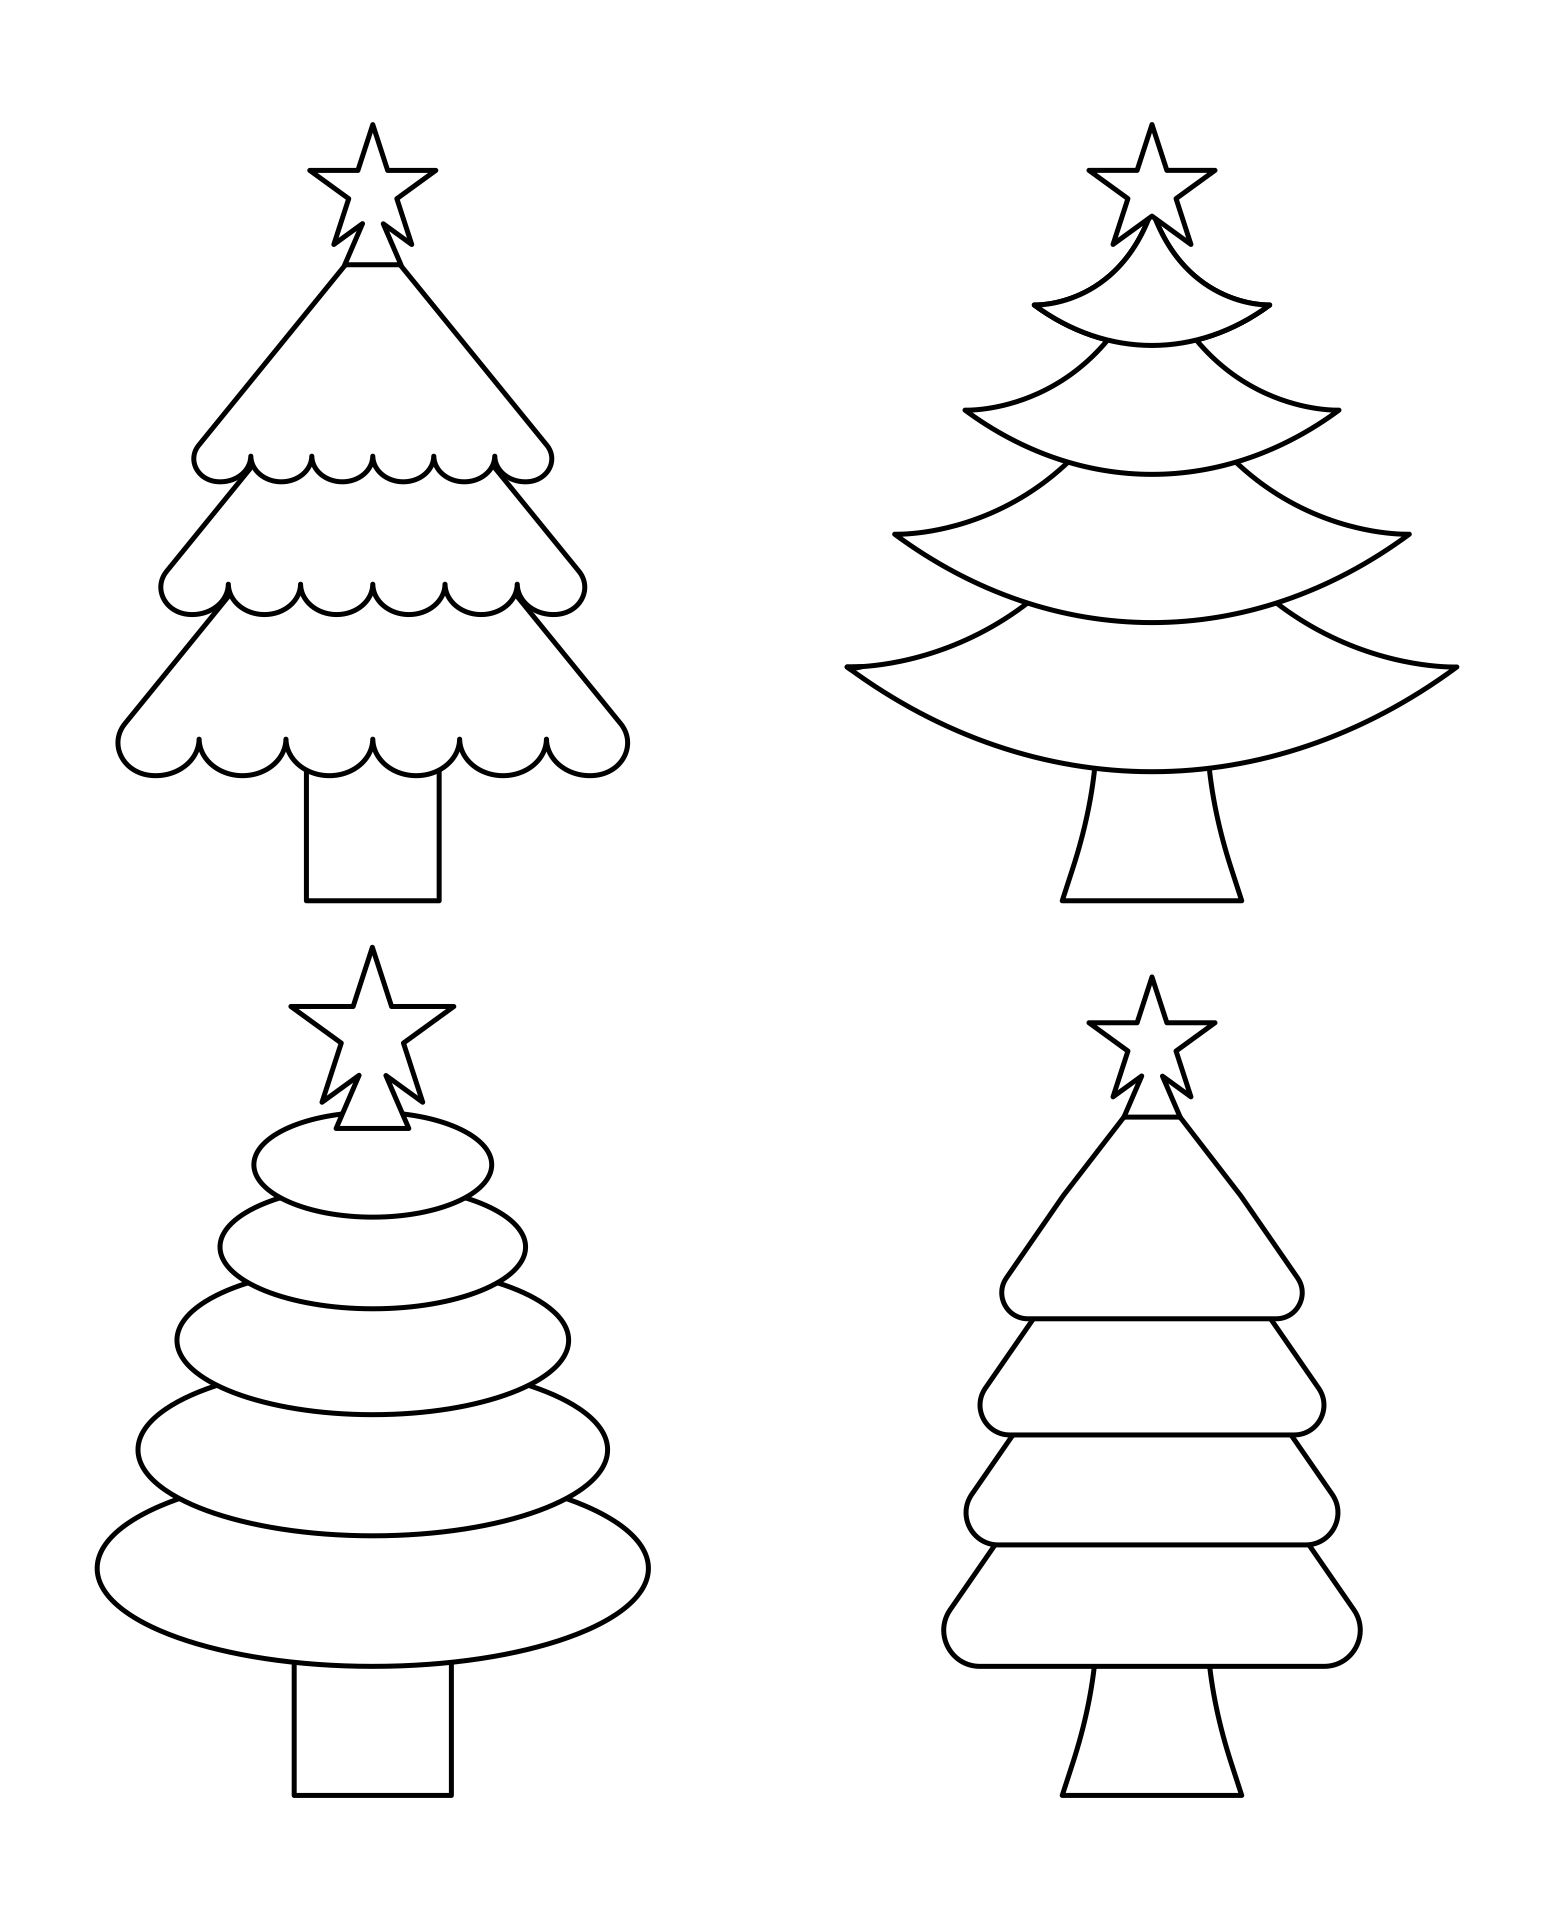 Printable Blank Christmas Large Tree Template